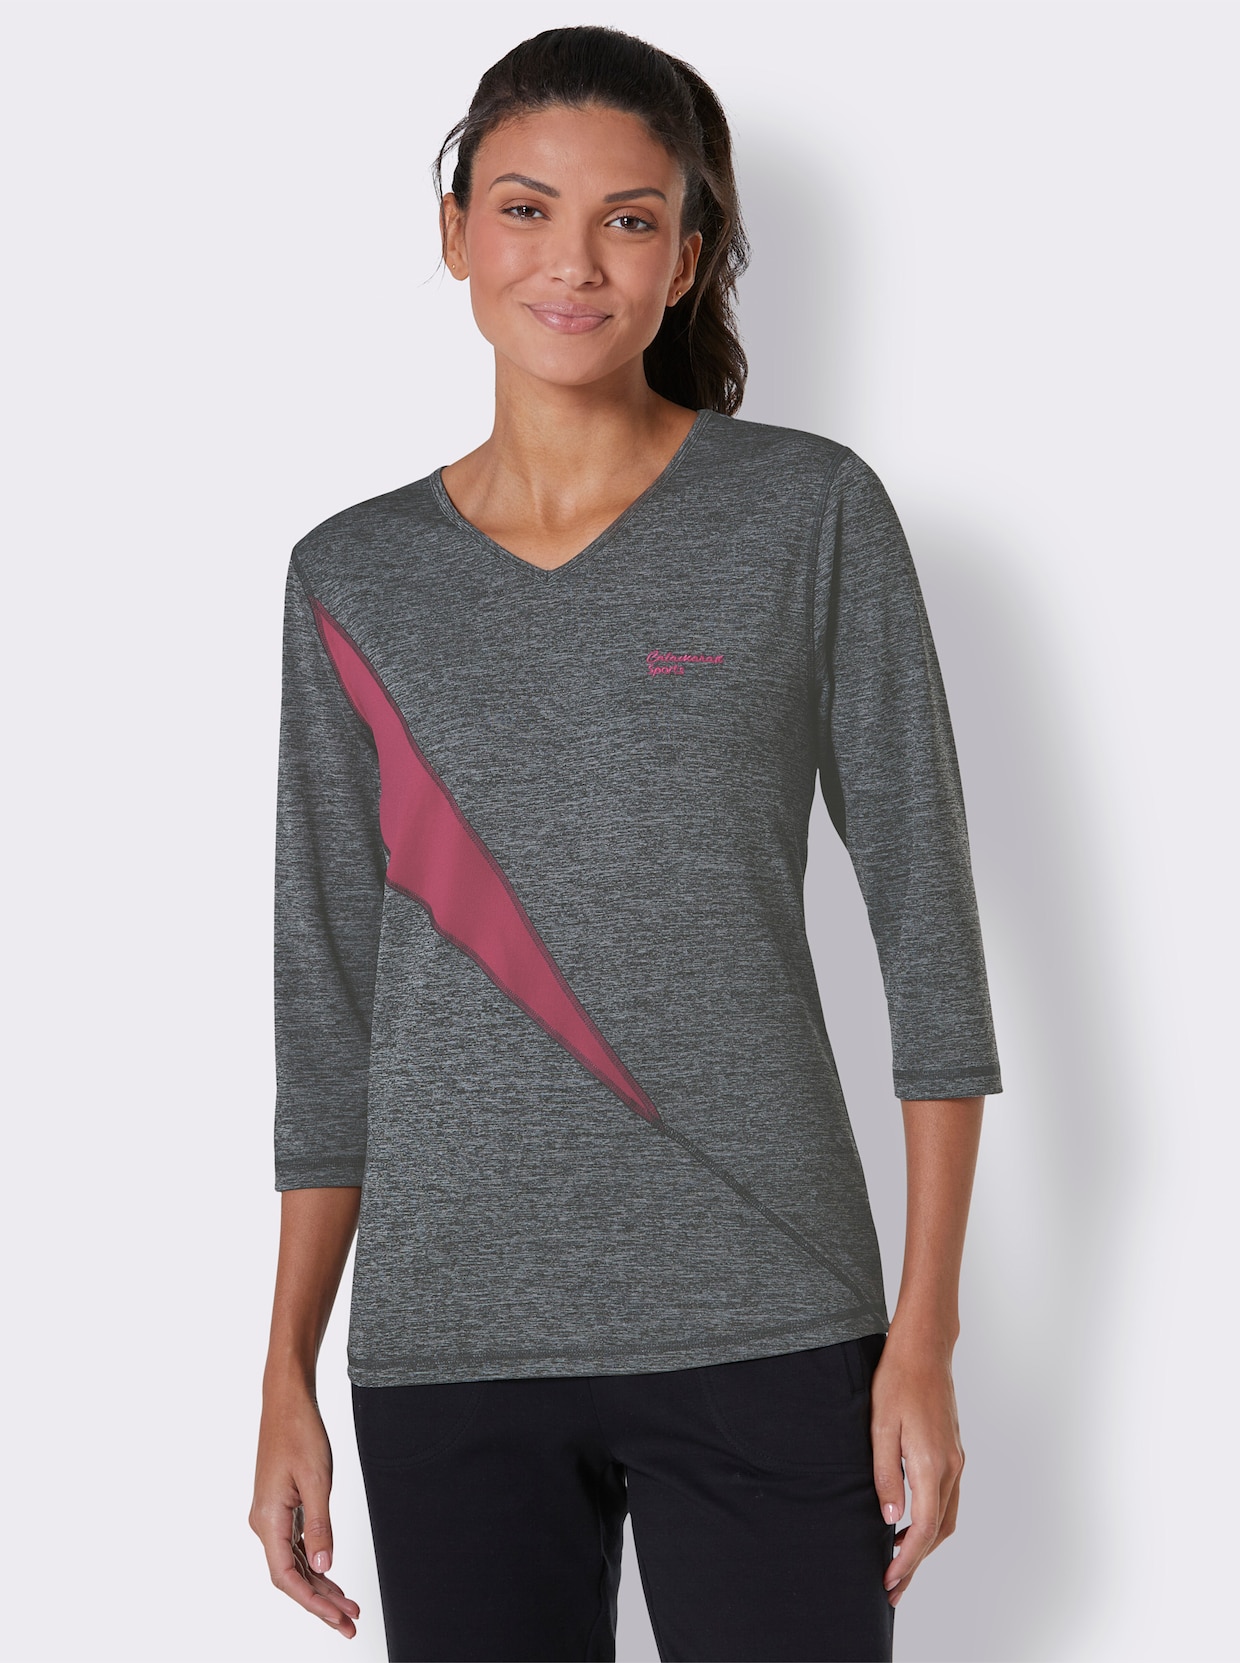 Catamaran Sports Funktions-Shirt - grau-meliert-pink